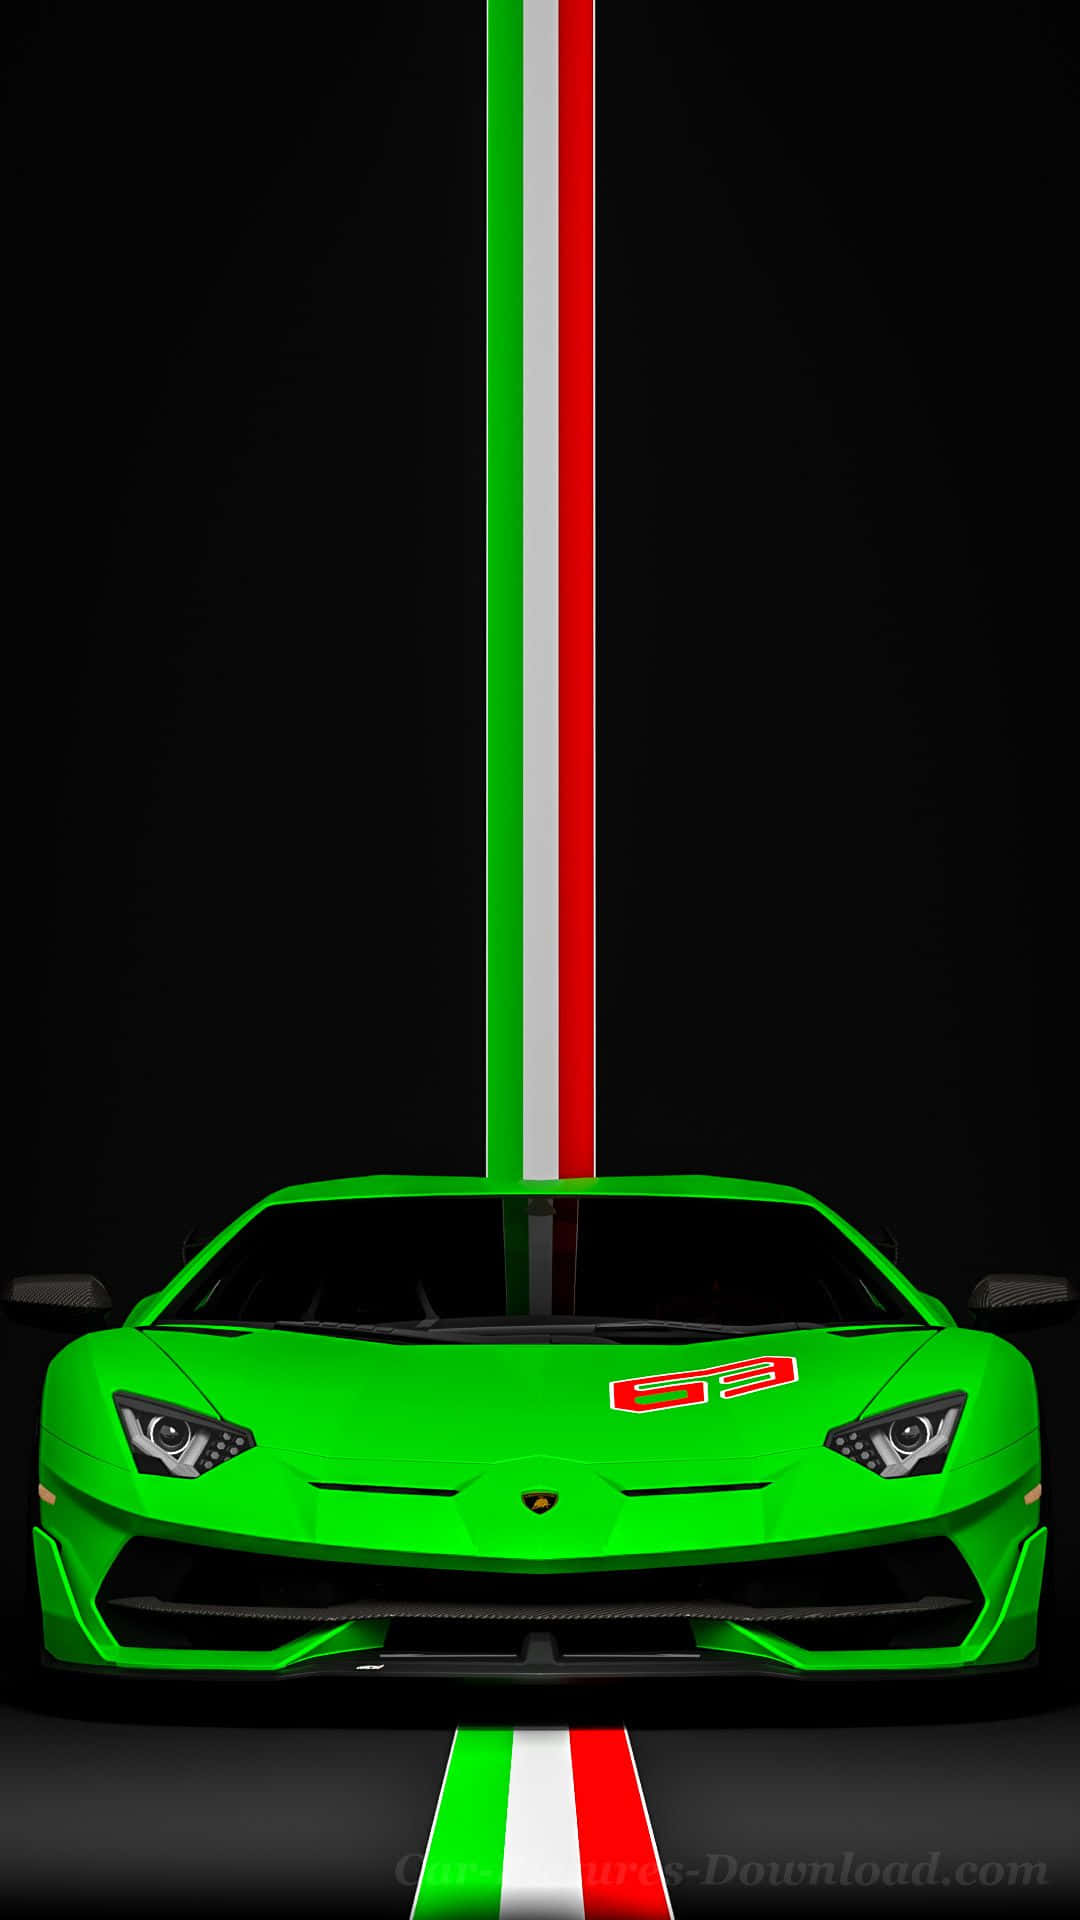 Verbessernsie Ihren Stil Mit Dem Lamborghini-telefon. Wallpaper